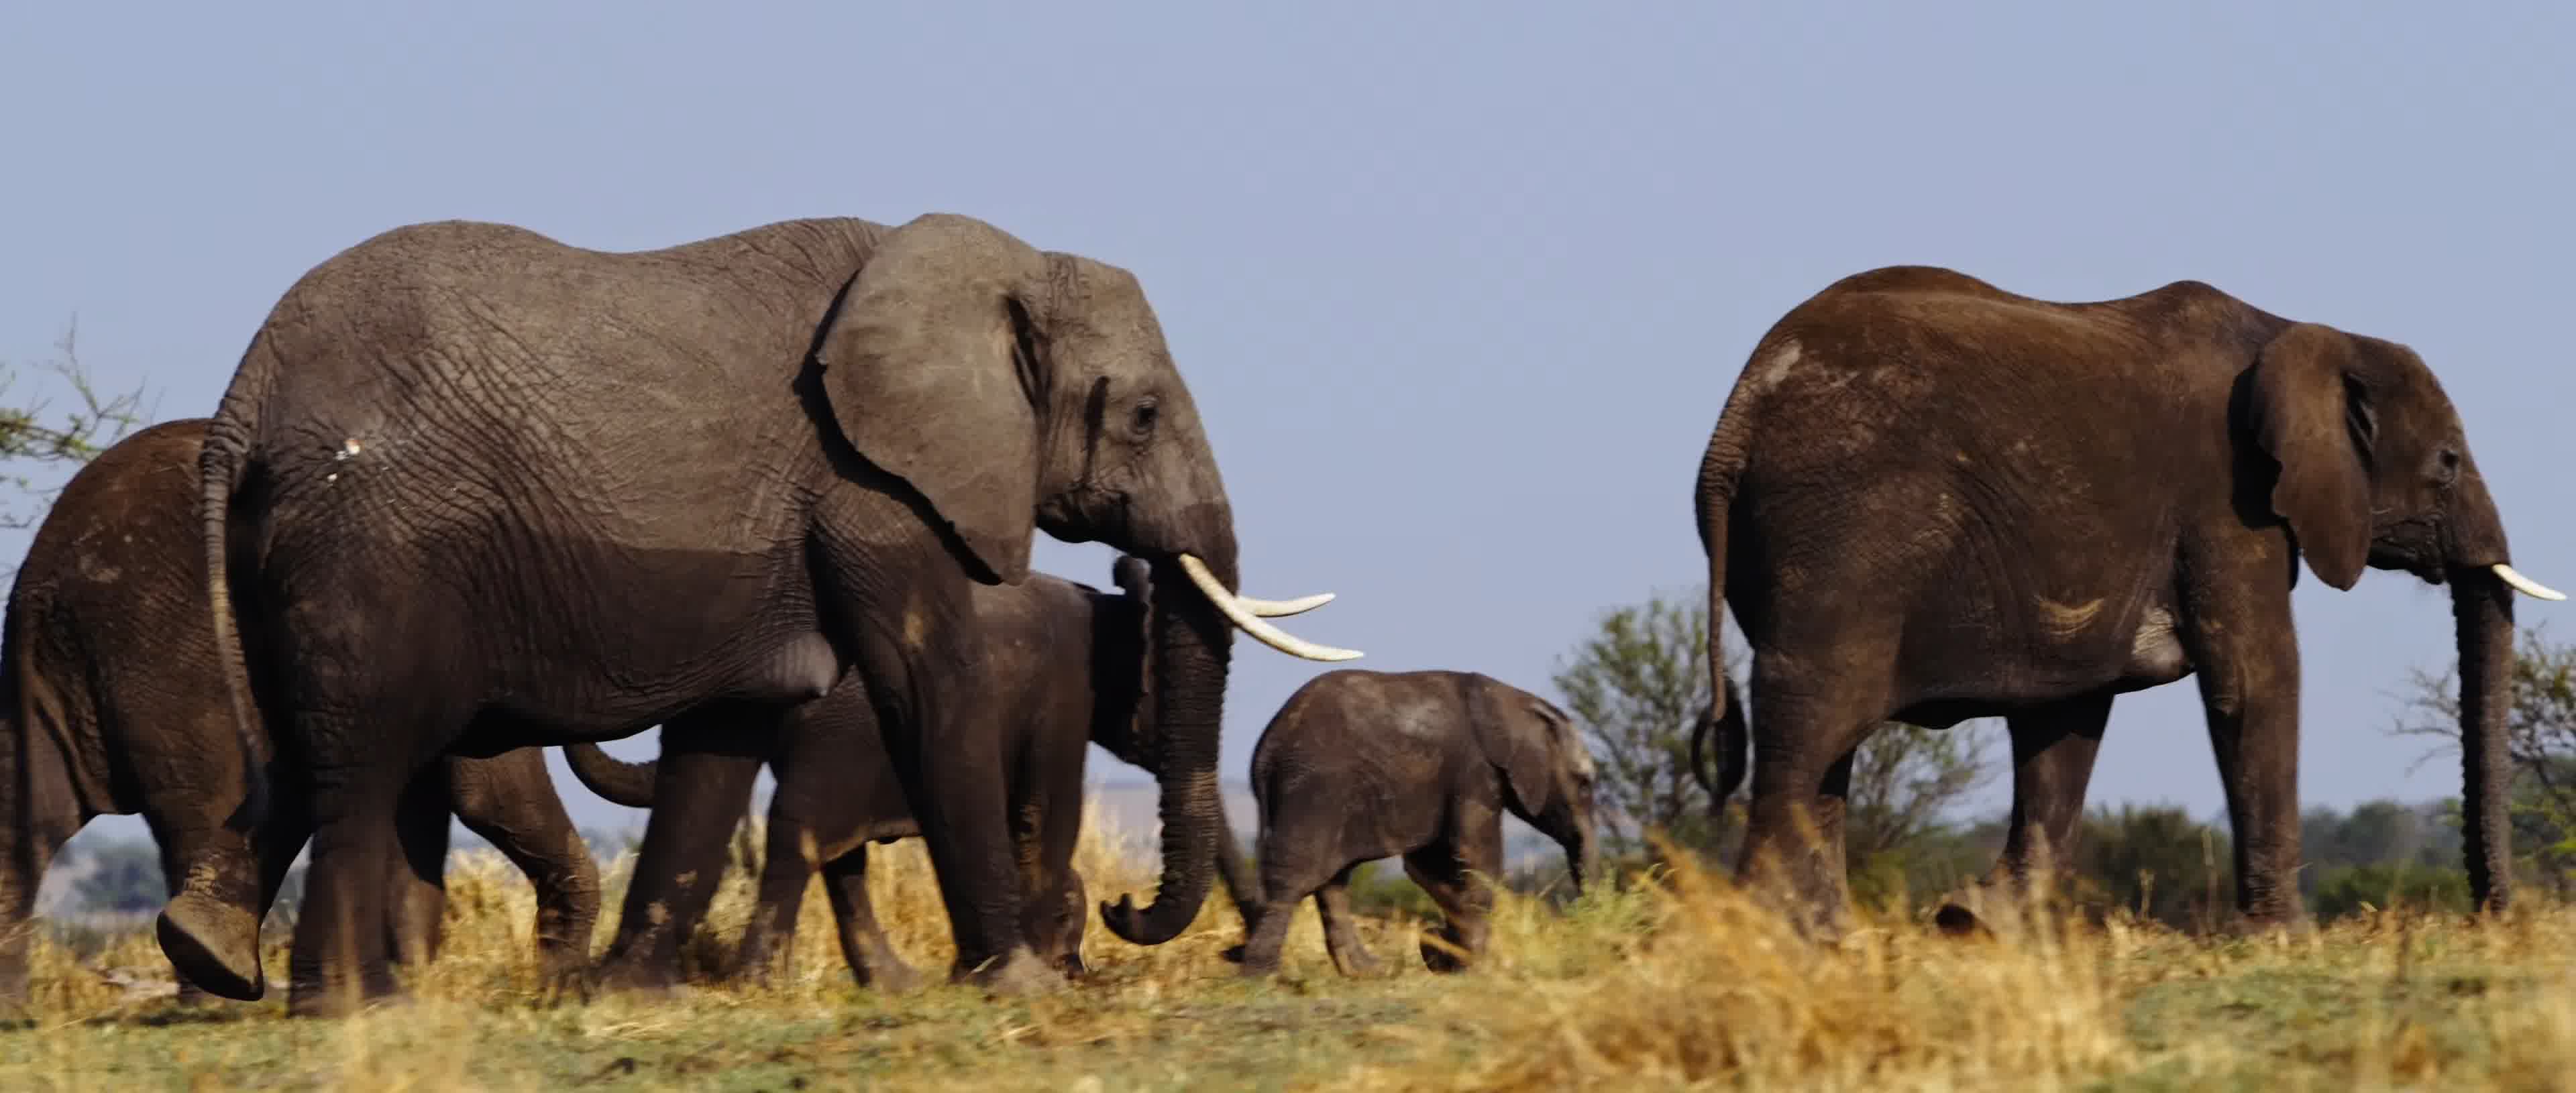 阿多大象国家公园中的非洲象，南非 (© Robert Harding/Alamy) | 必应每日高清壁纸 - 精彩,从这里开始